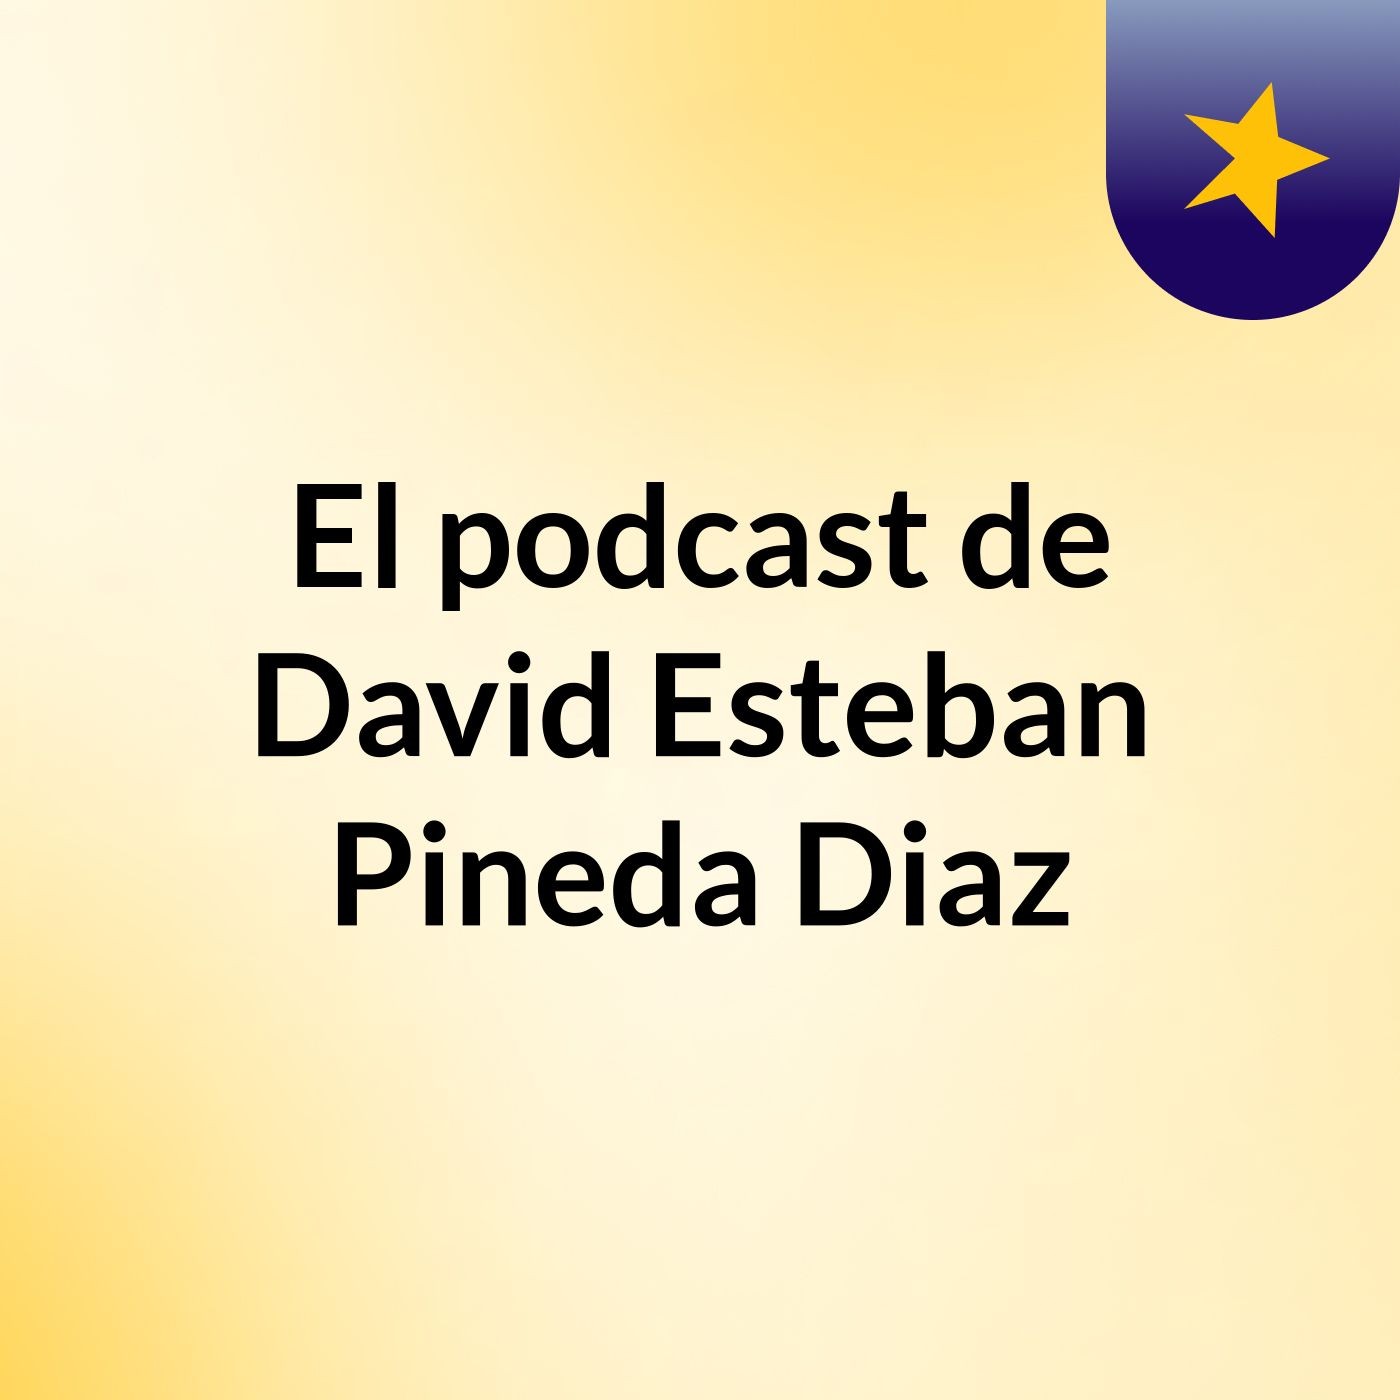 El podcast de David Esteban Pineda Diaz